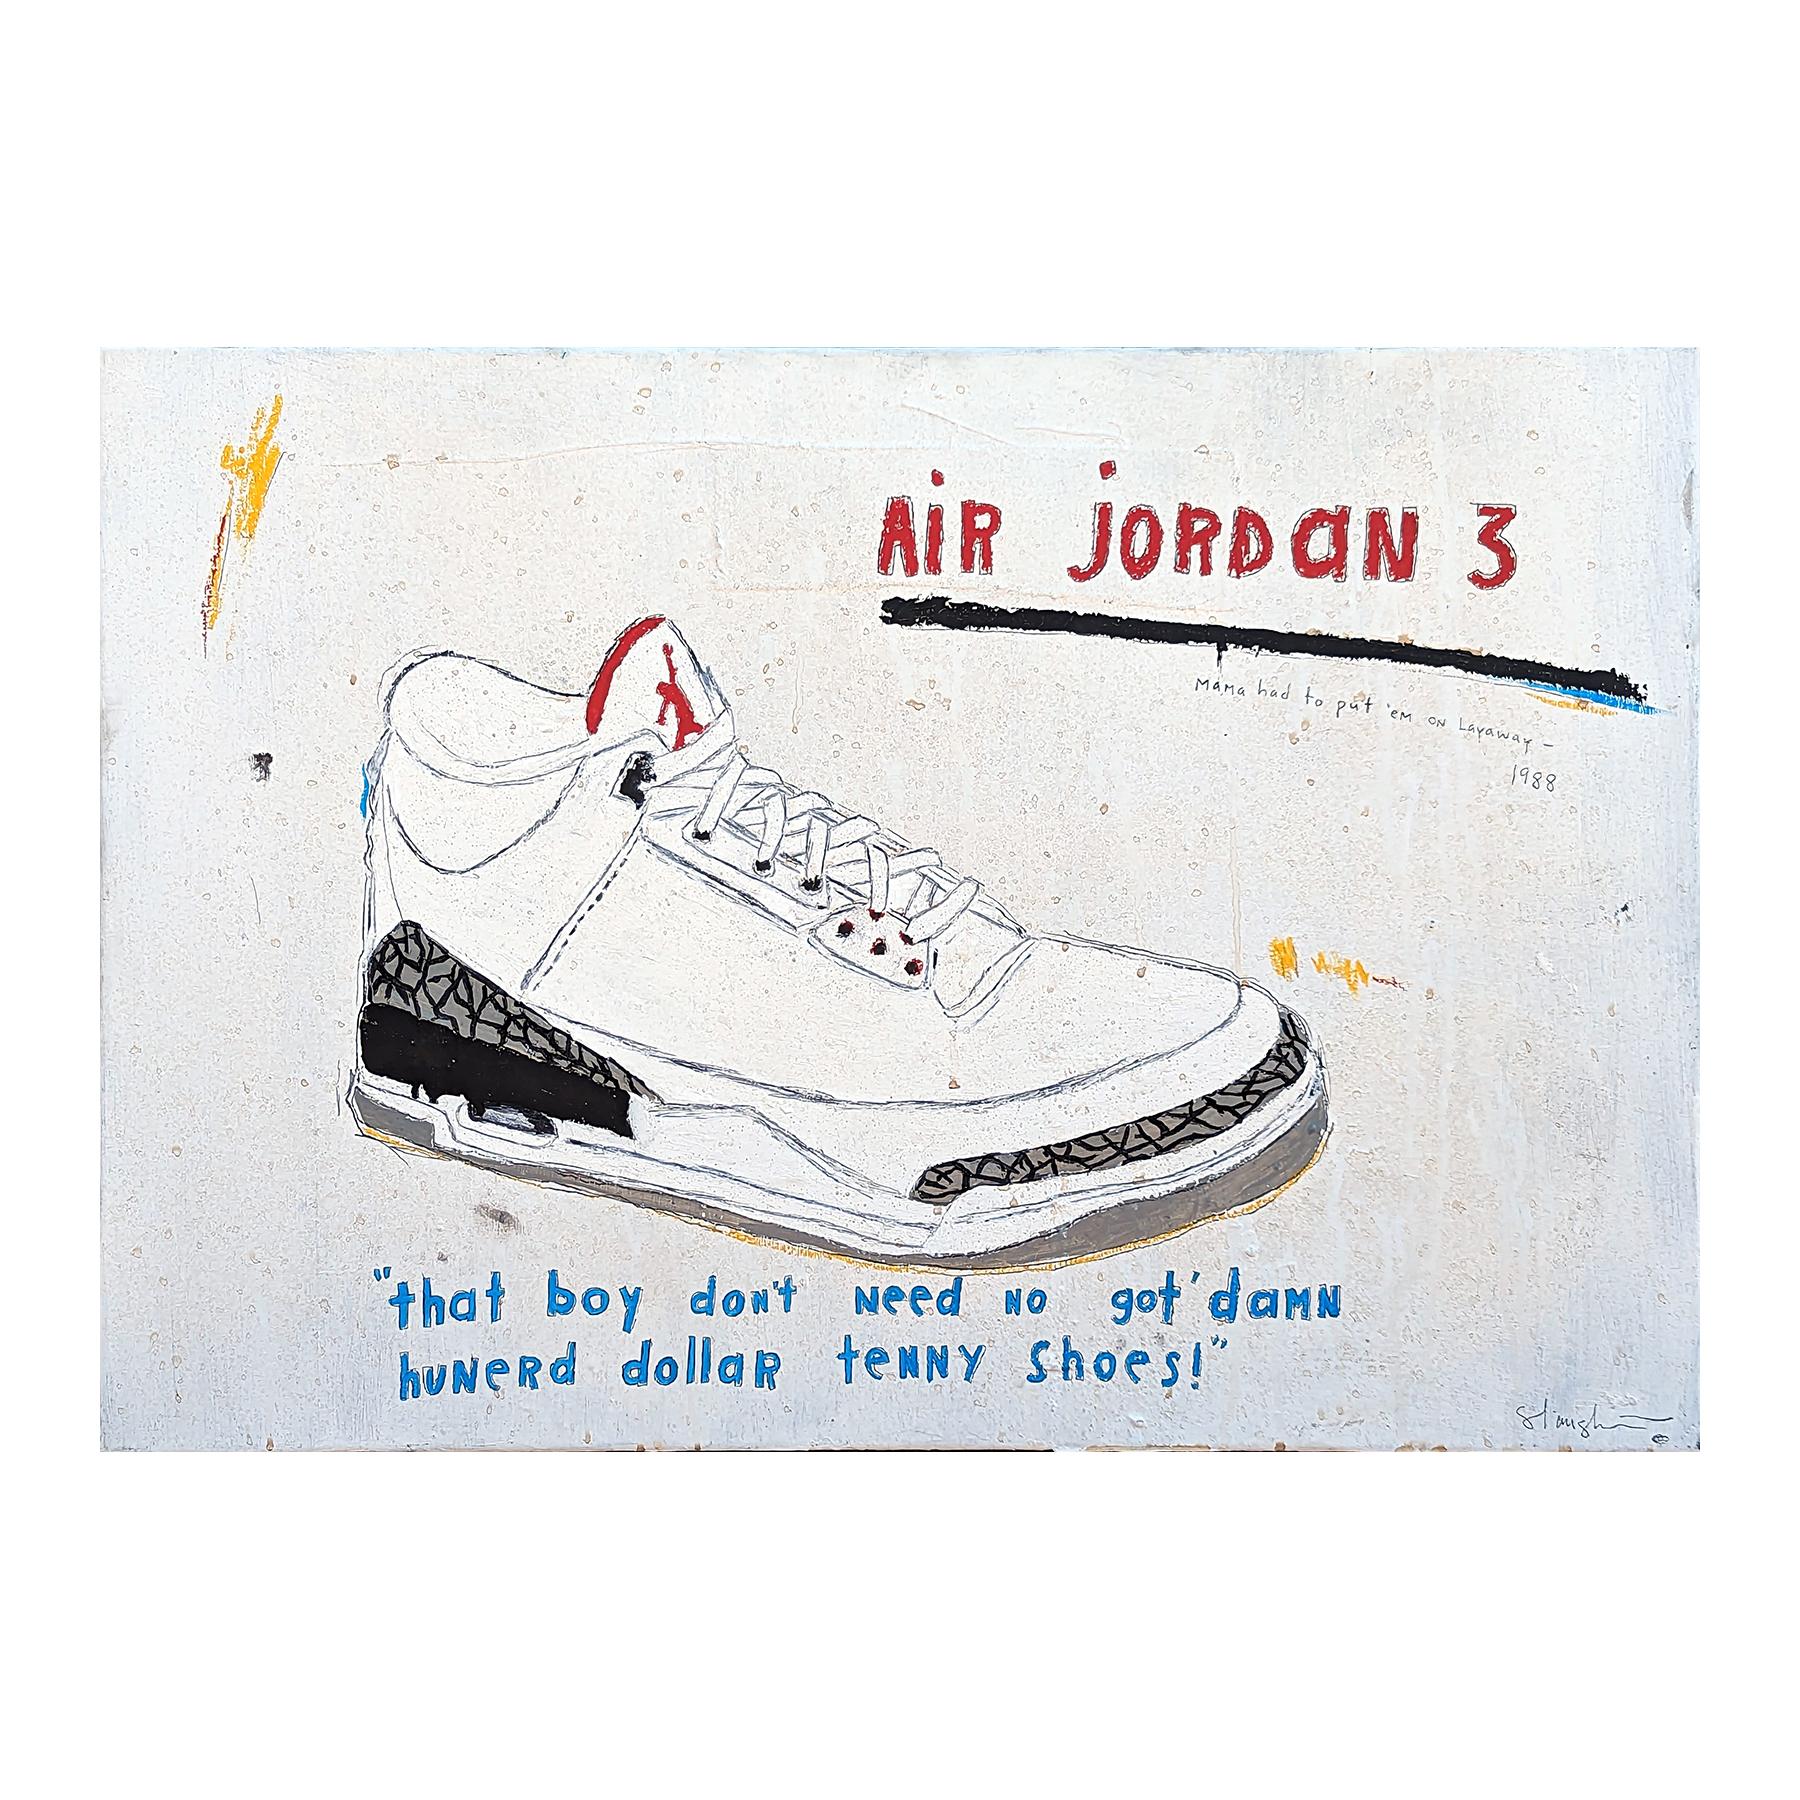 Zeitgenössische Ausstellungsmalerei des Künstlers Tra' Slaughter aus Houston, TX. Auf dem Gemälde ist ein Air-Jordan-Sneaker abgebildet, darunter steht der Satz 